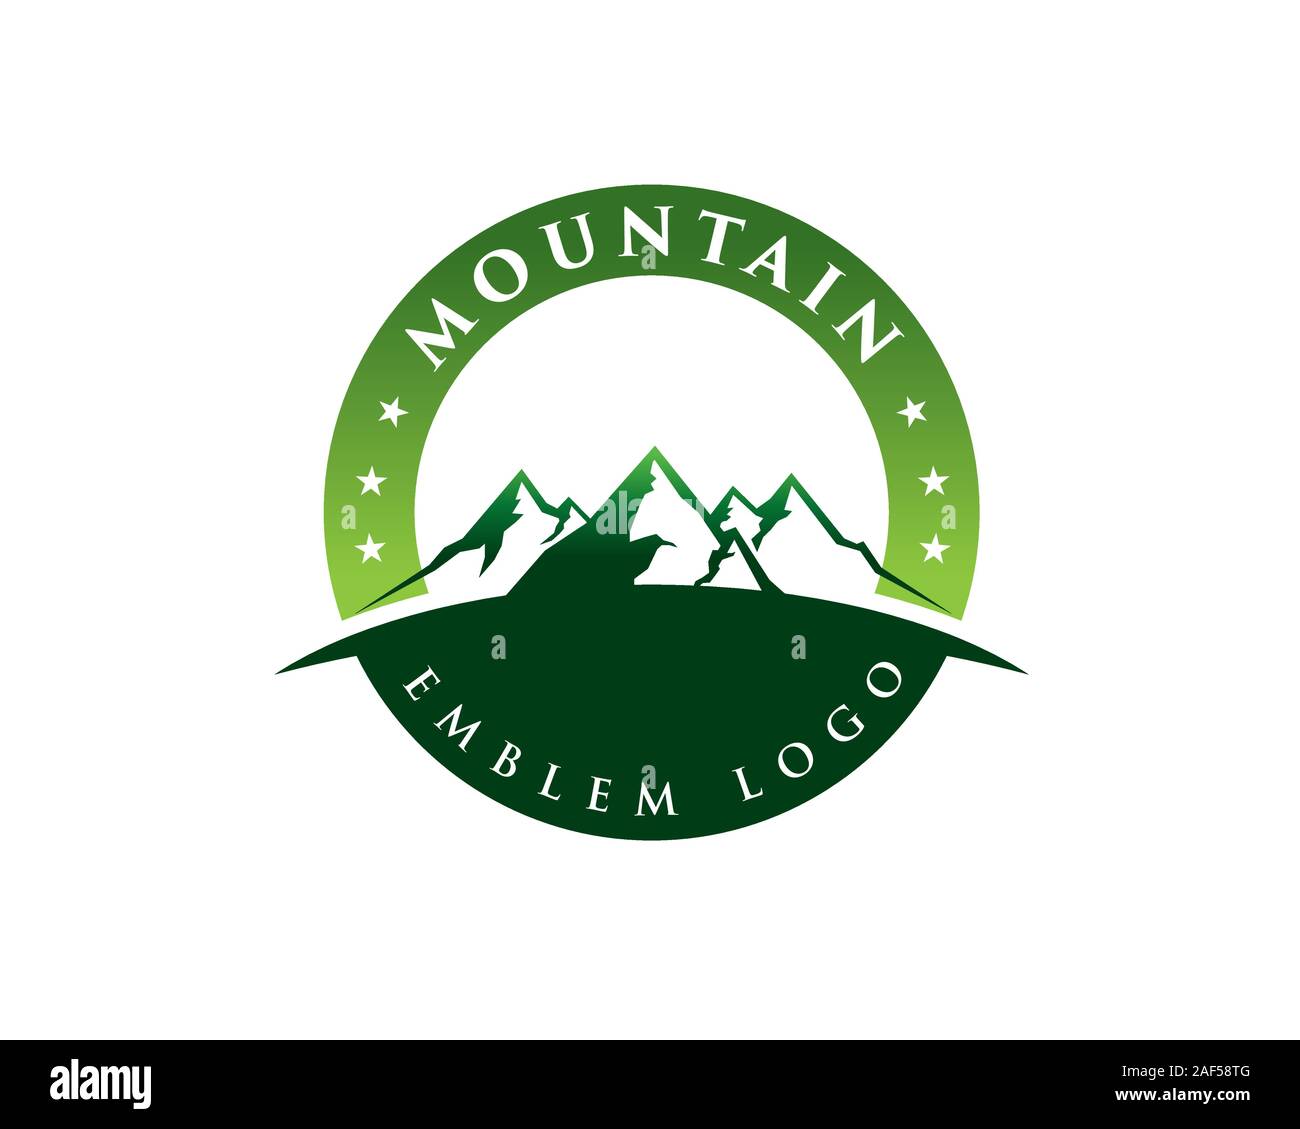 mountain circular emblem Stock Vector